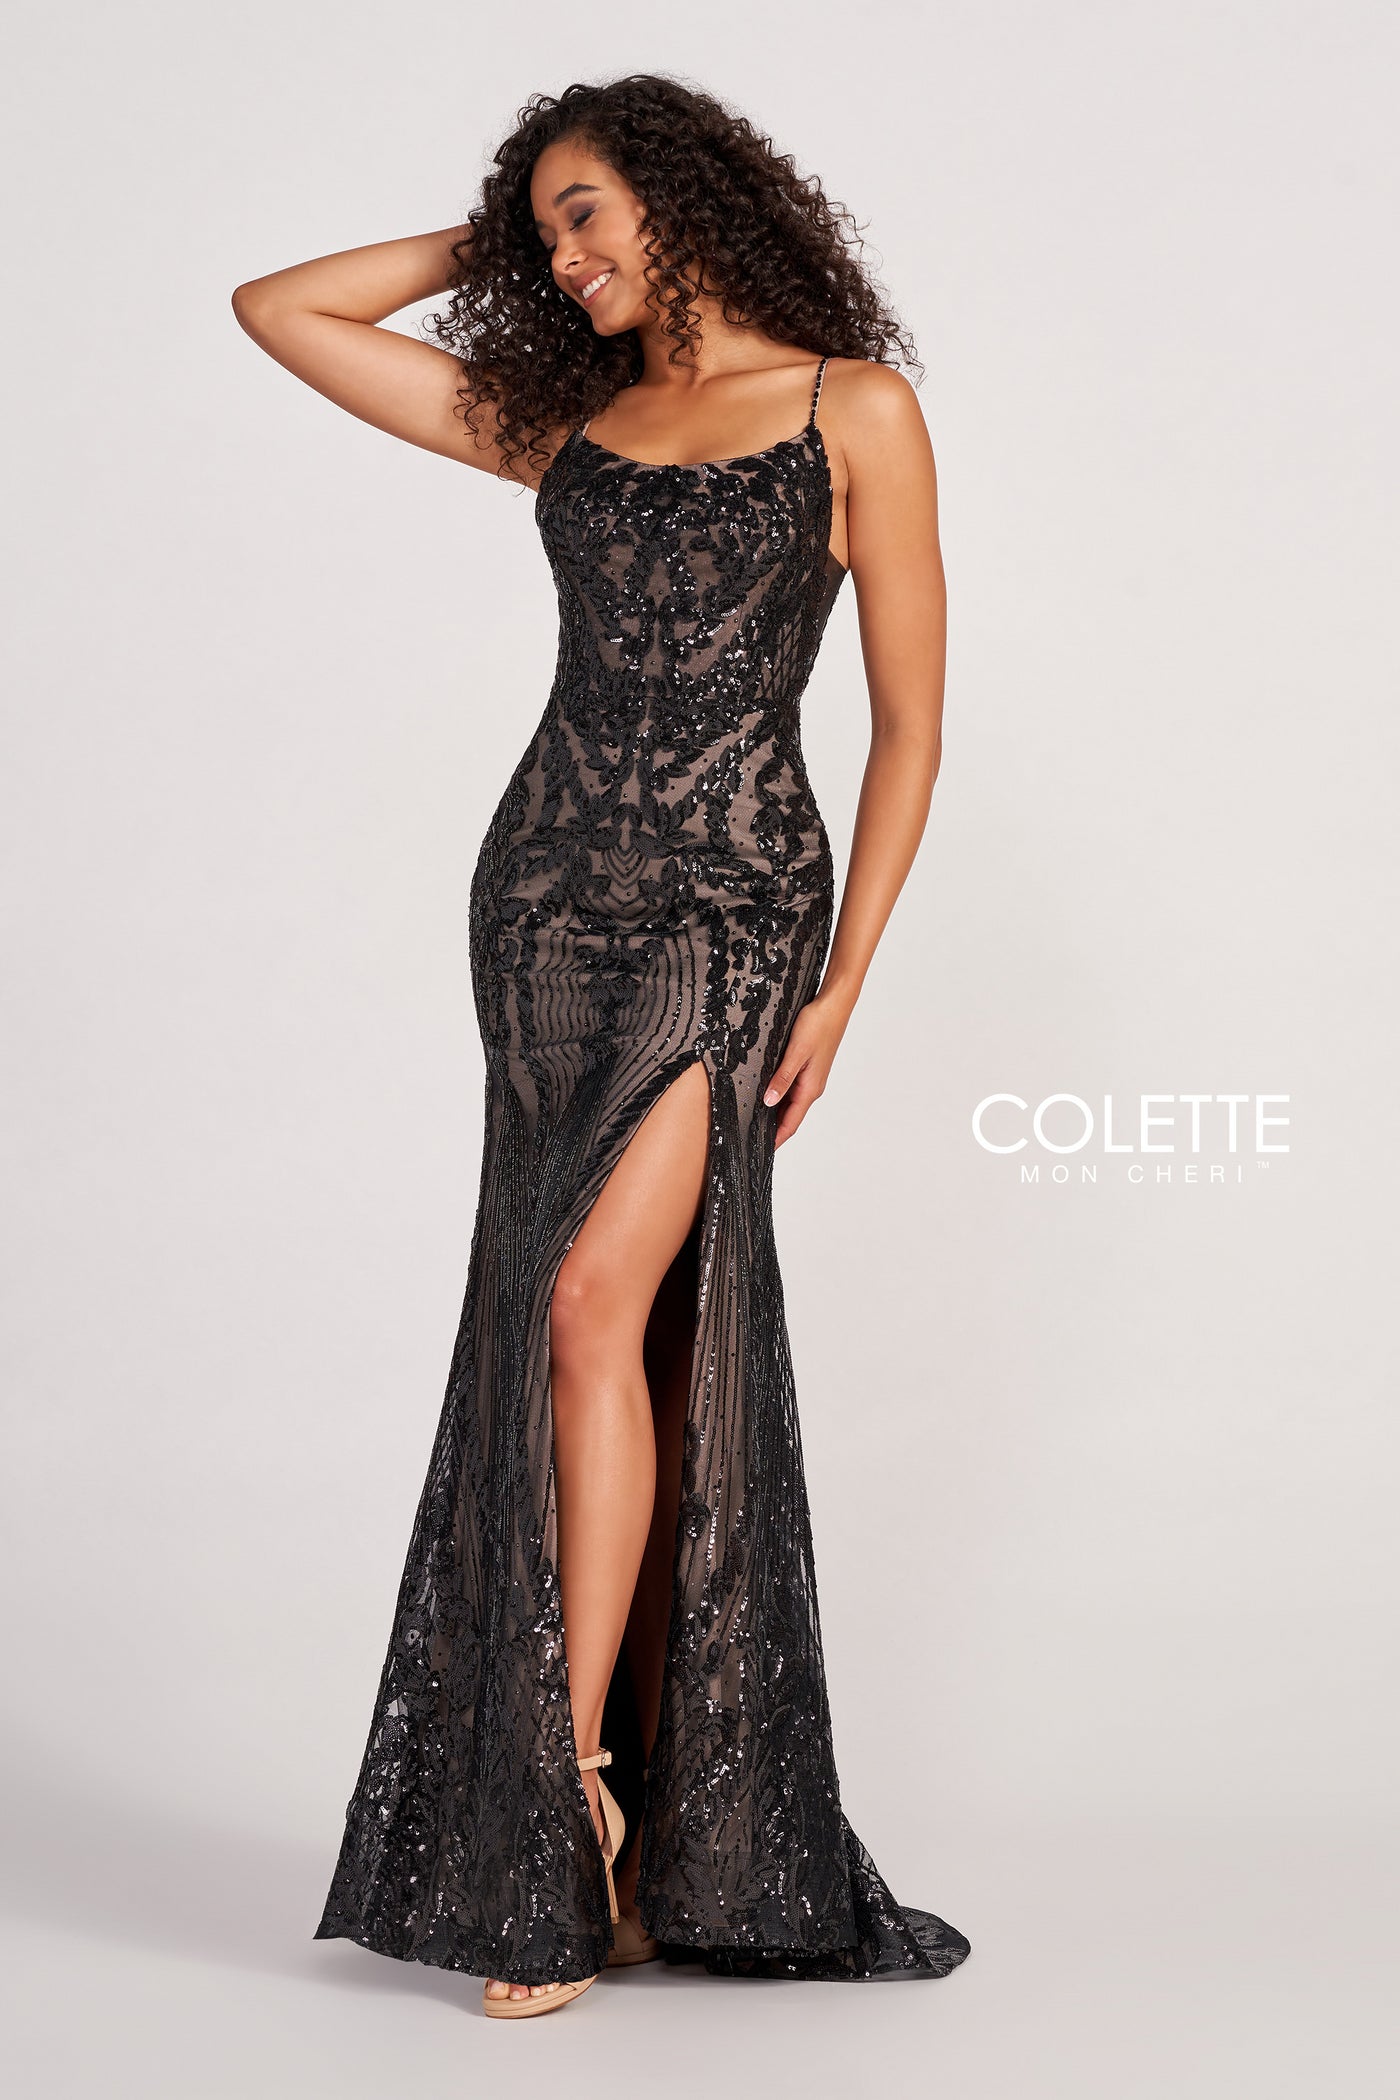 Colette CL2035 - Mydressline